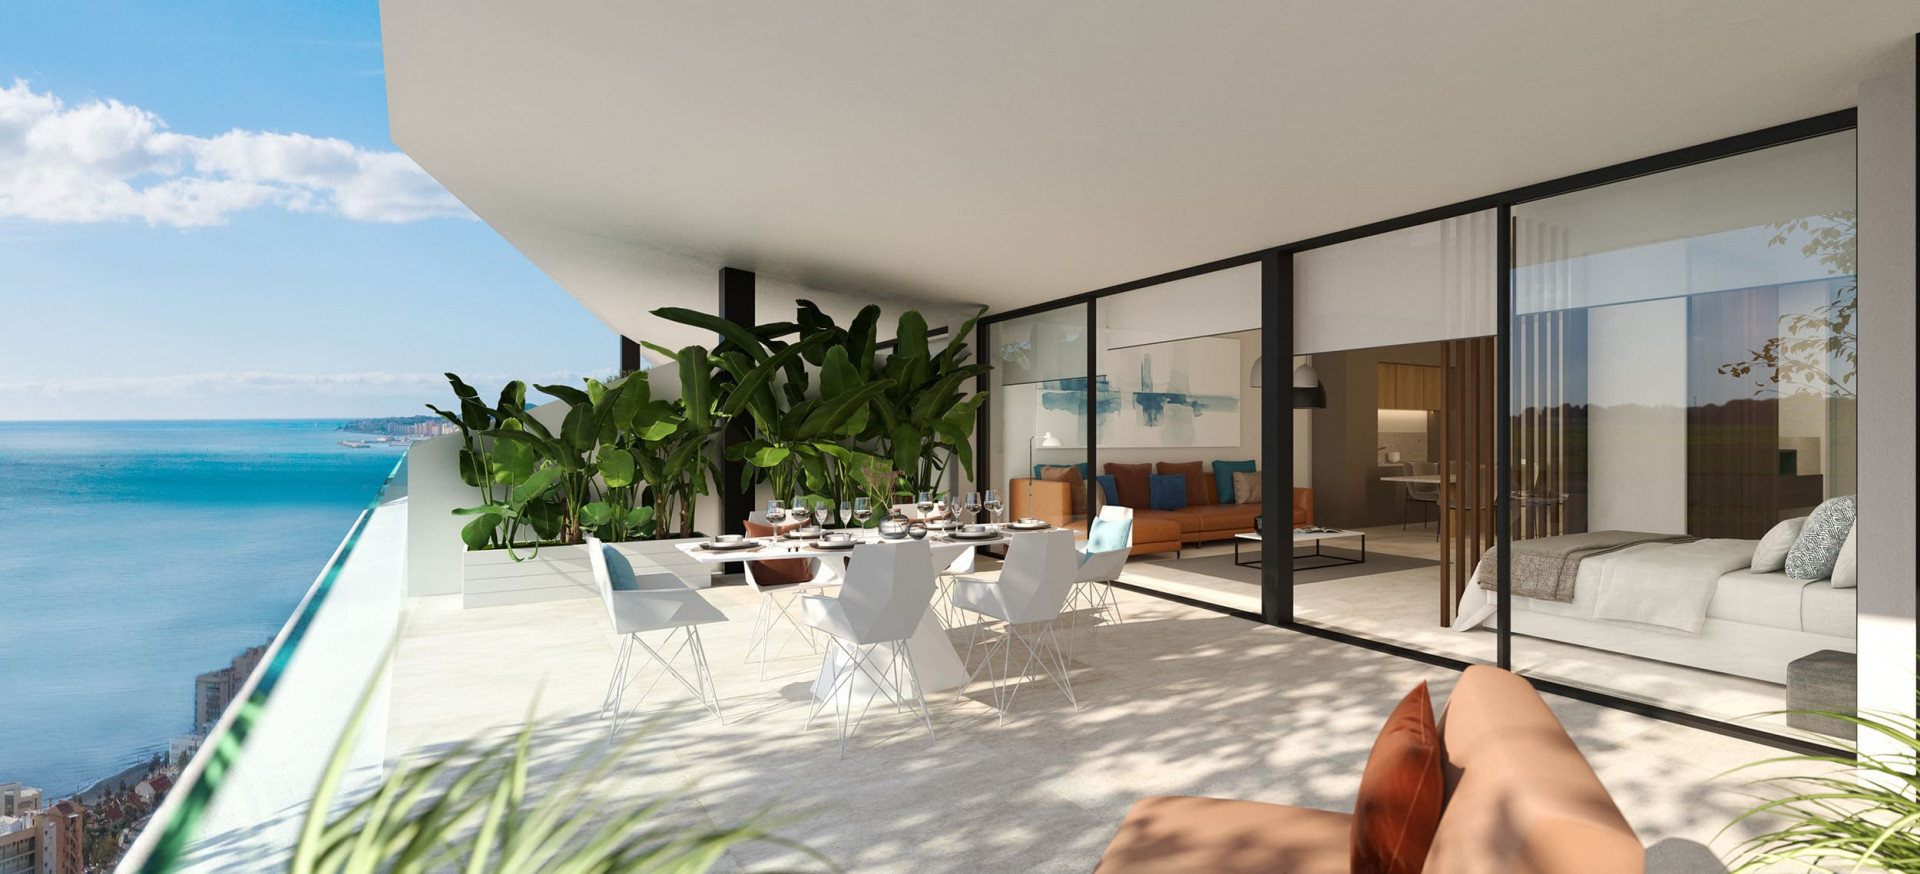 New three bedroom flat with private garden in Reserva del Higueron, Fuengirola. | Image 0